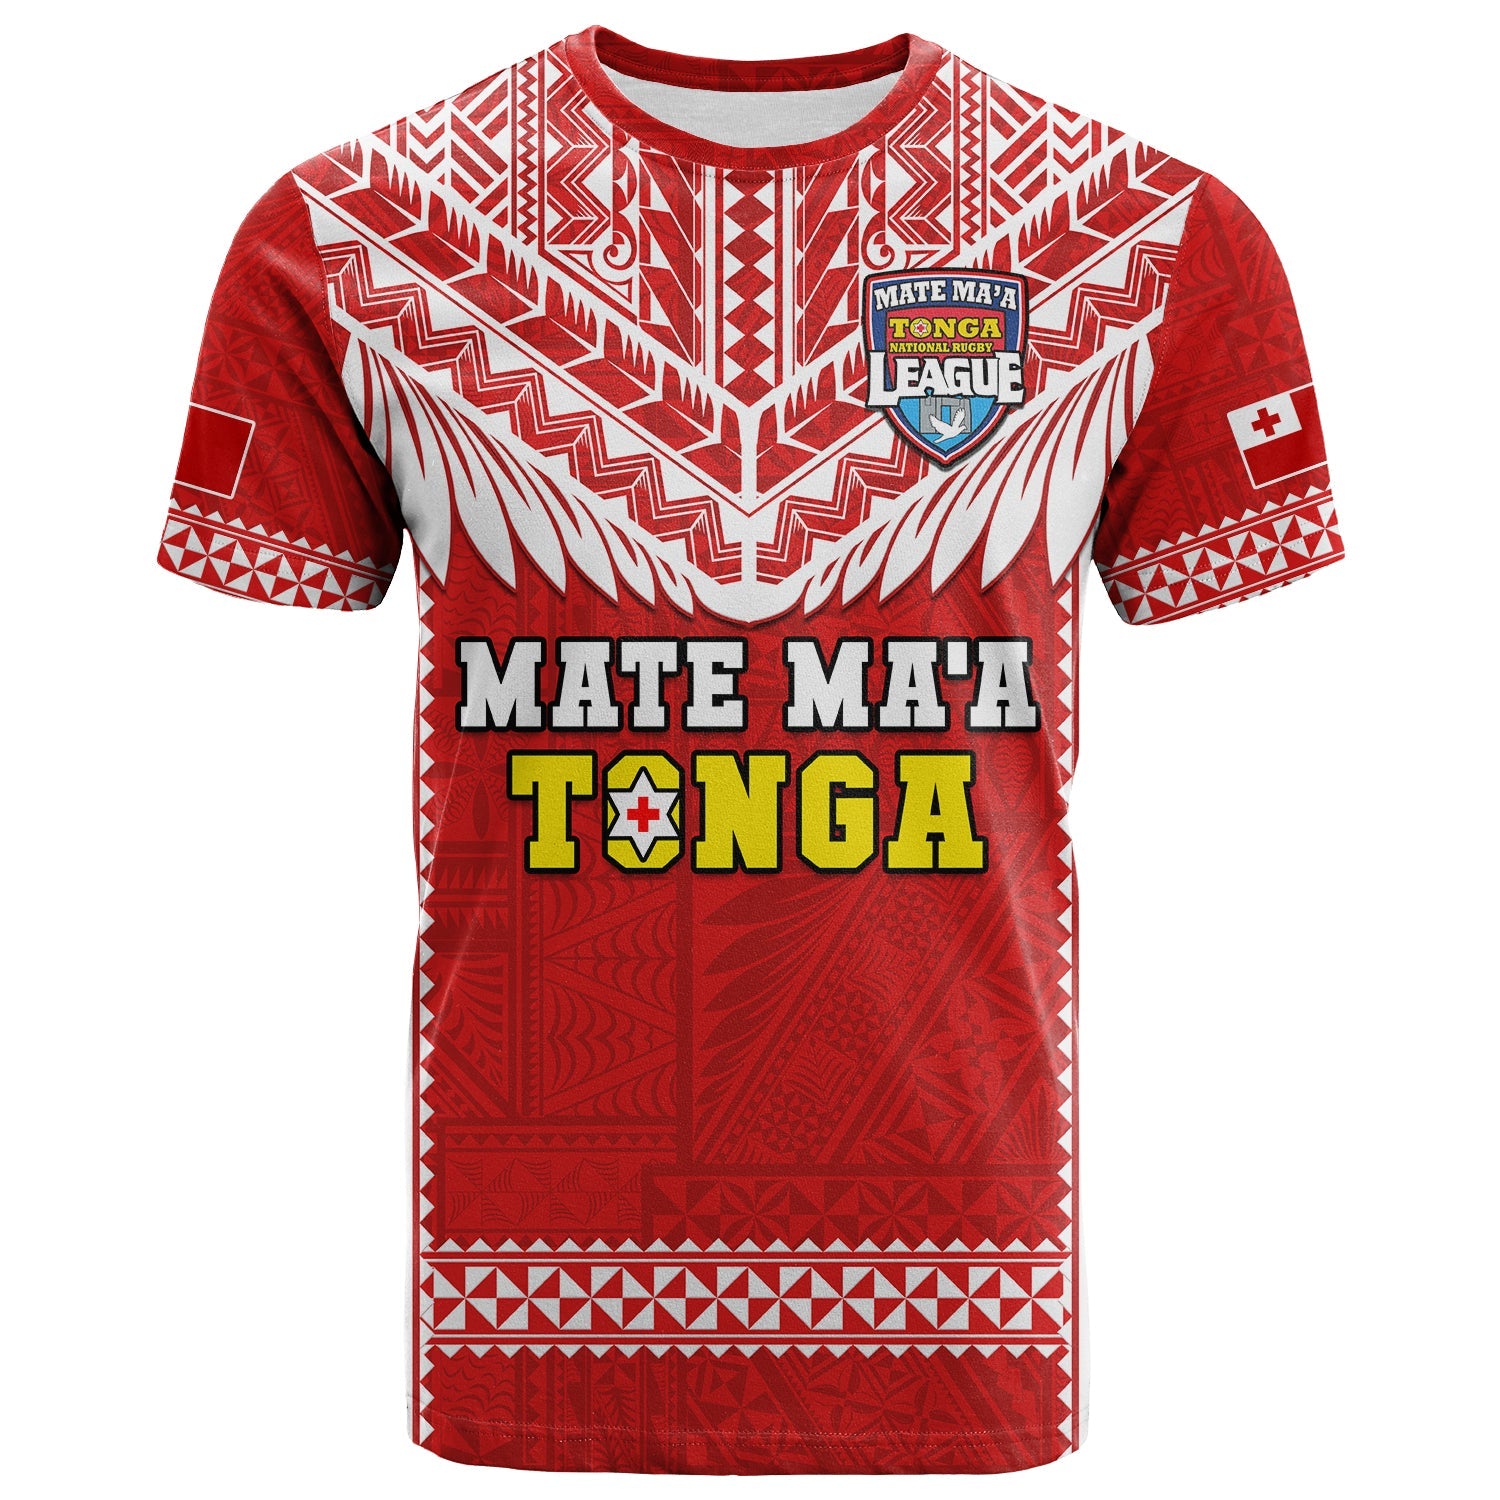 Tonga Rugby T Shirt Mate Maa Tonga Pacific Ngatu White LT14 Adult Red - Polynesian Pride